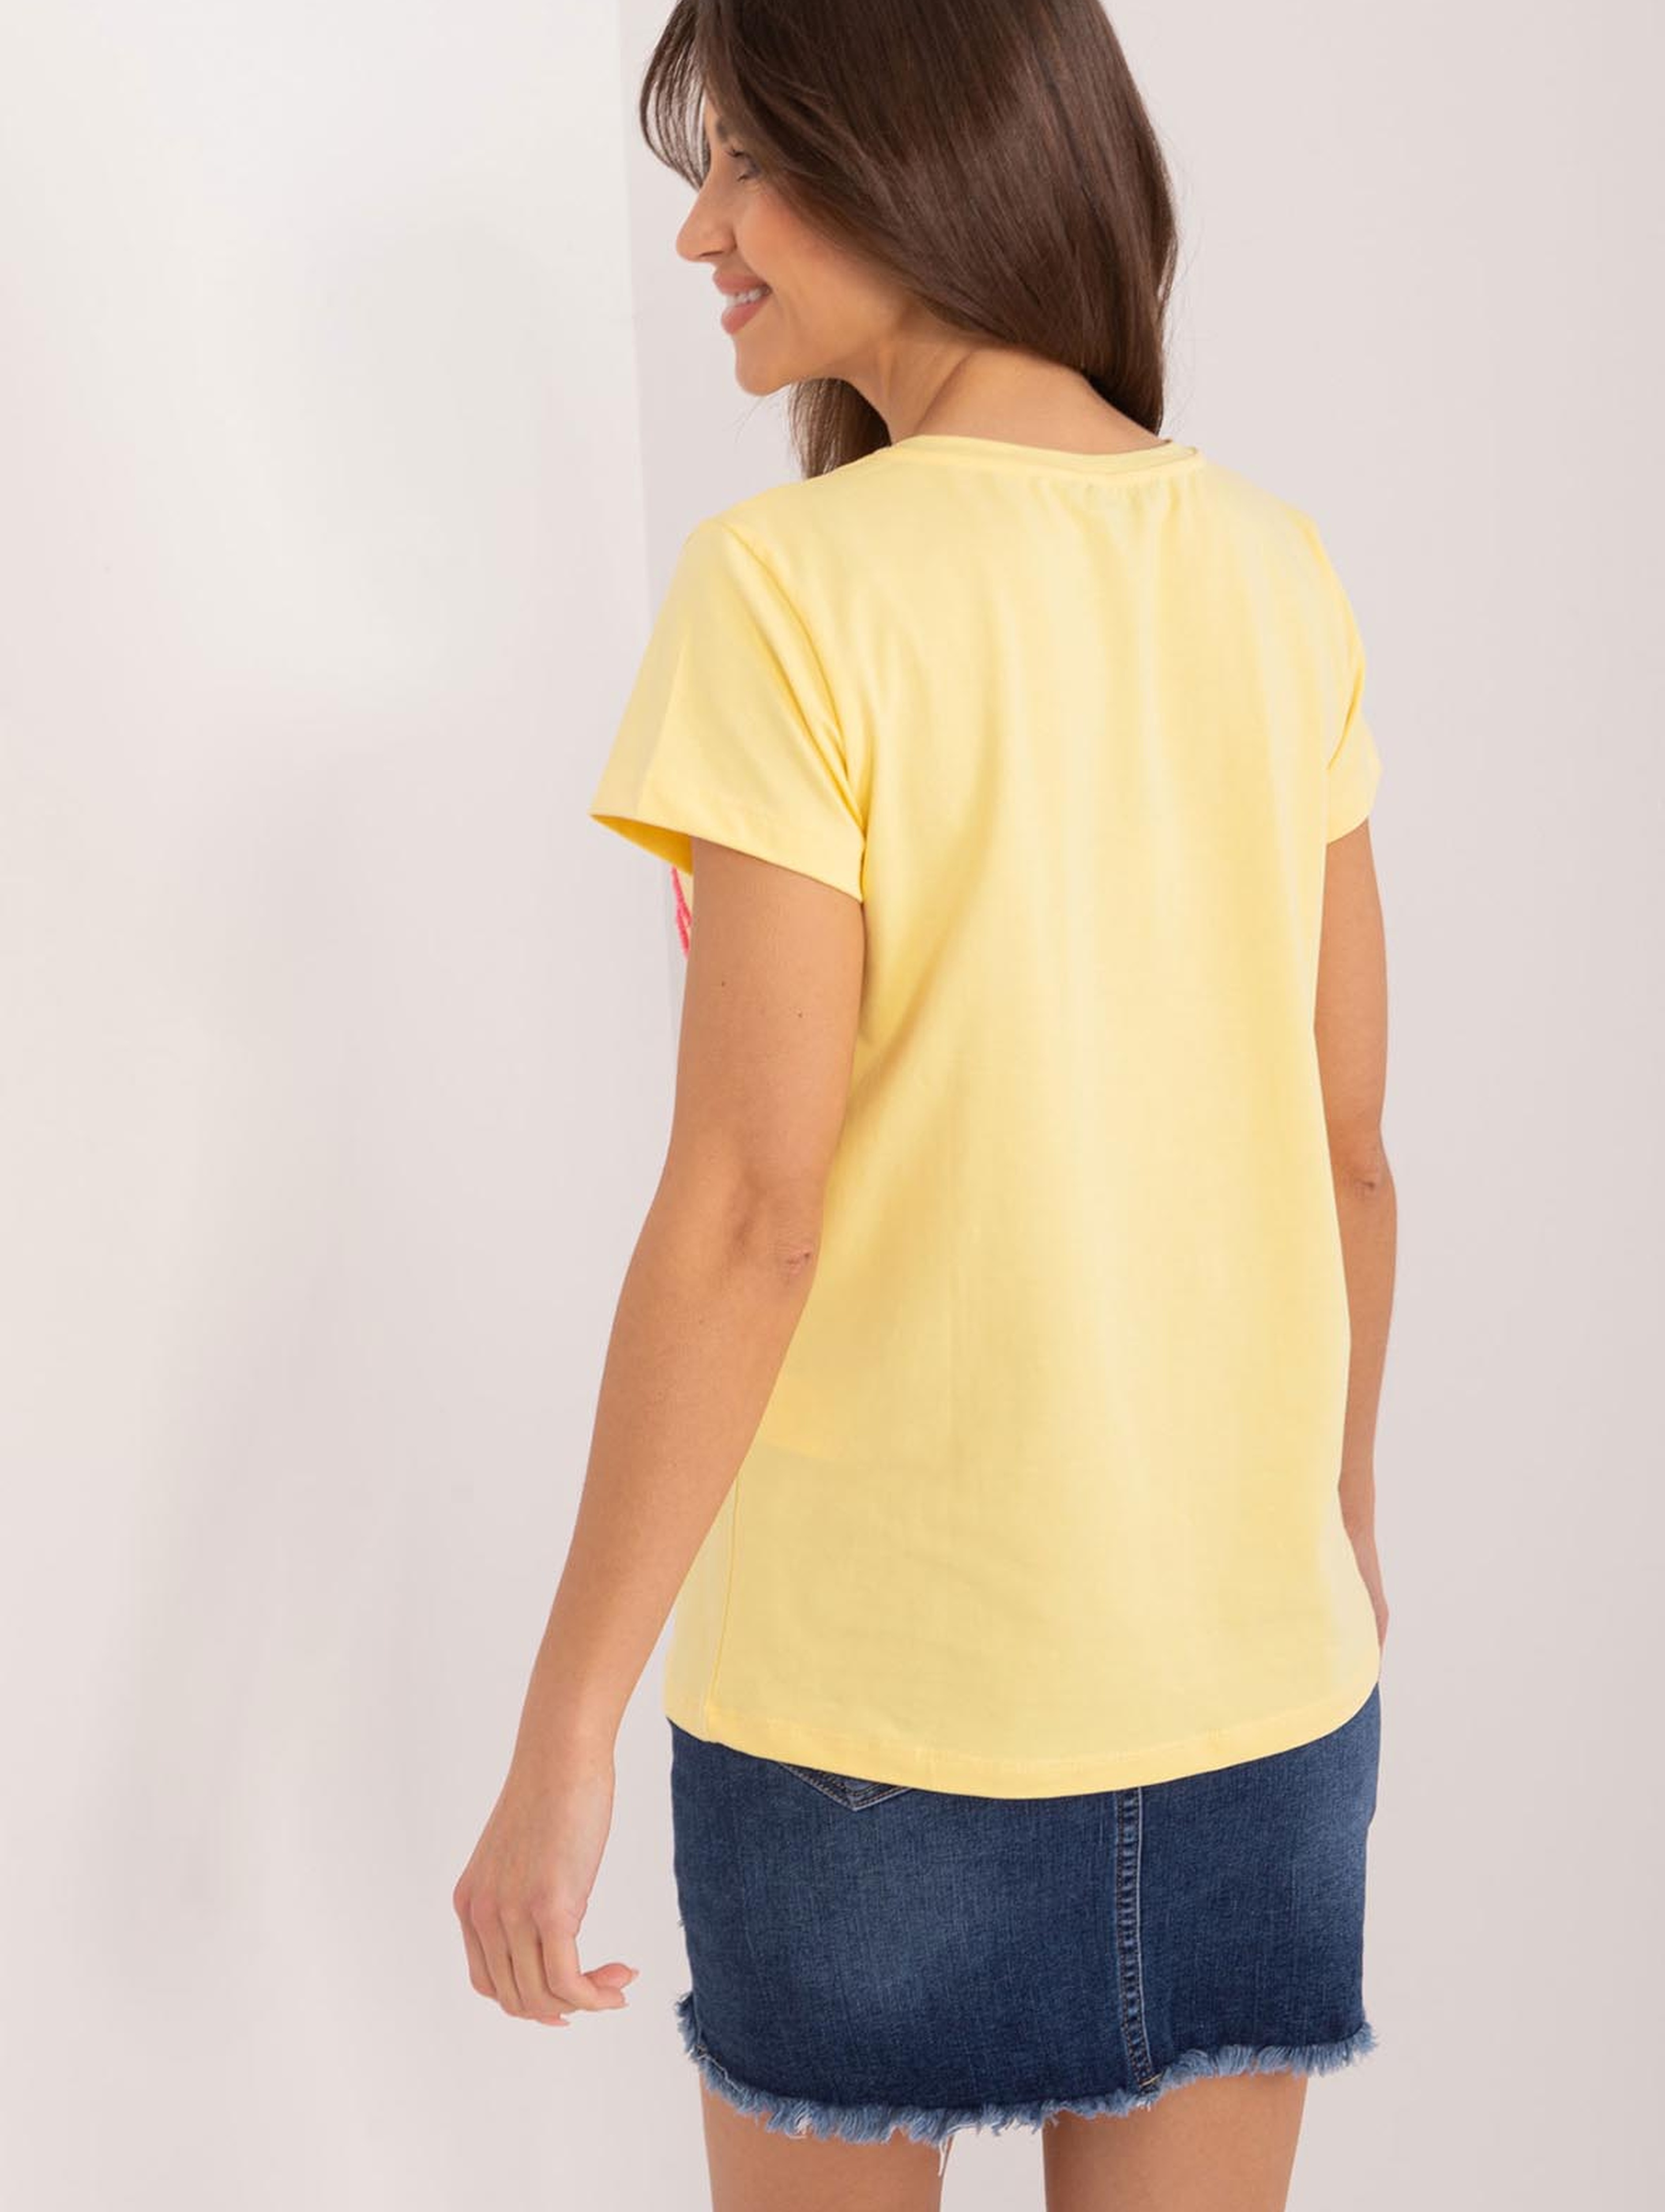 T-Shirt z kwiatową aplikacją żółty